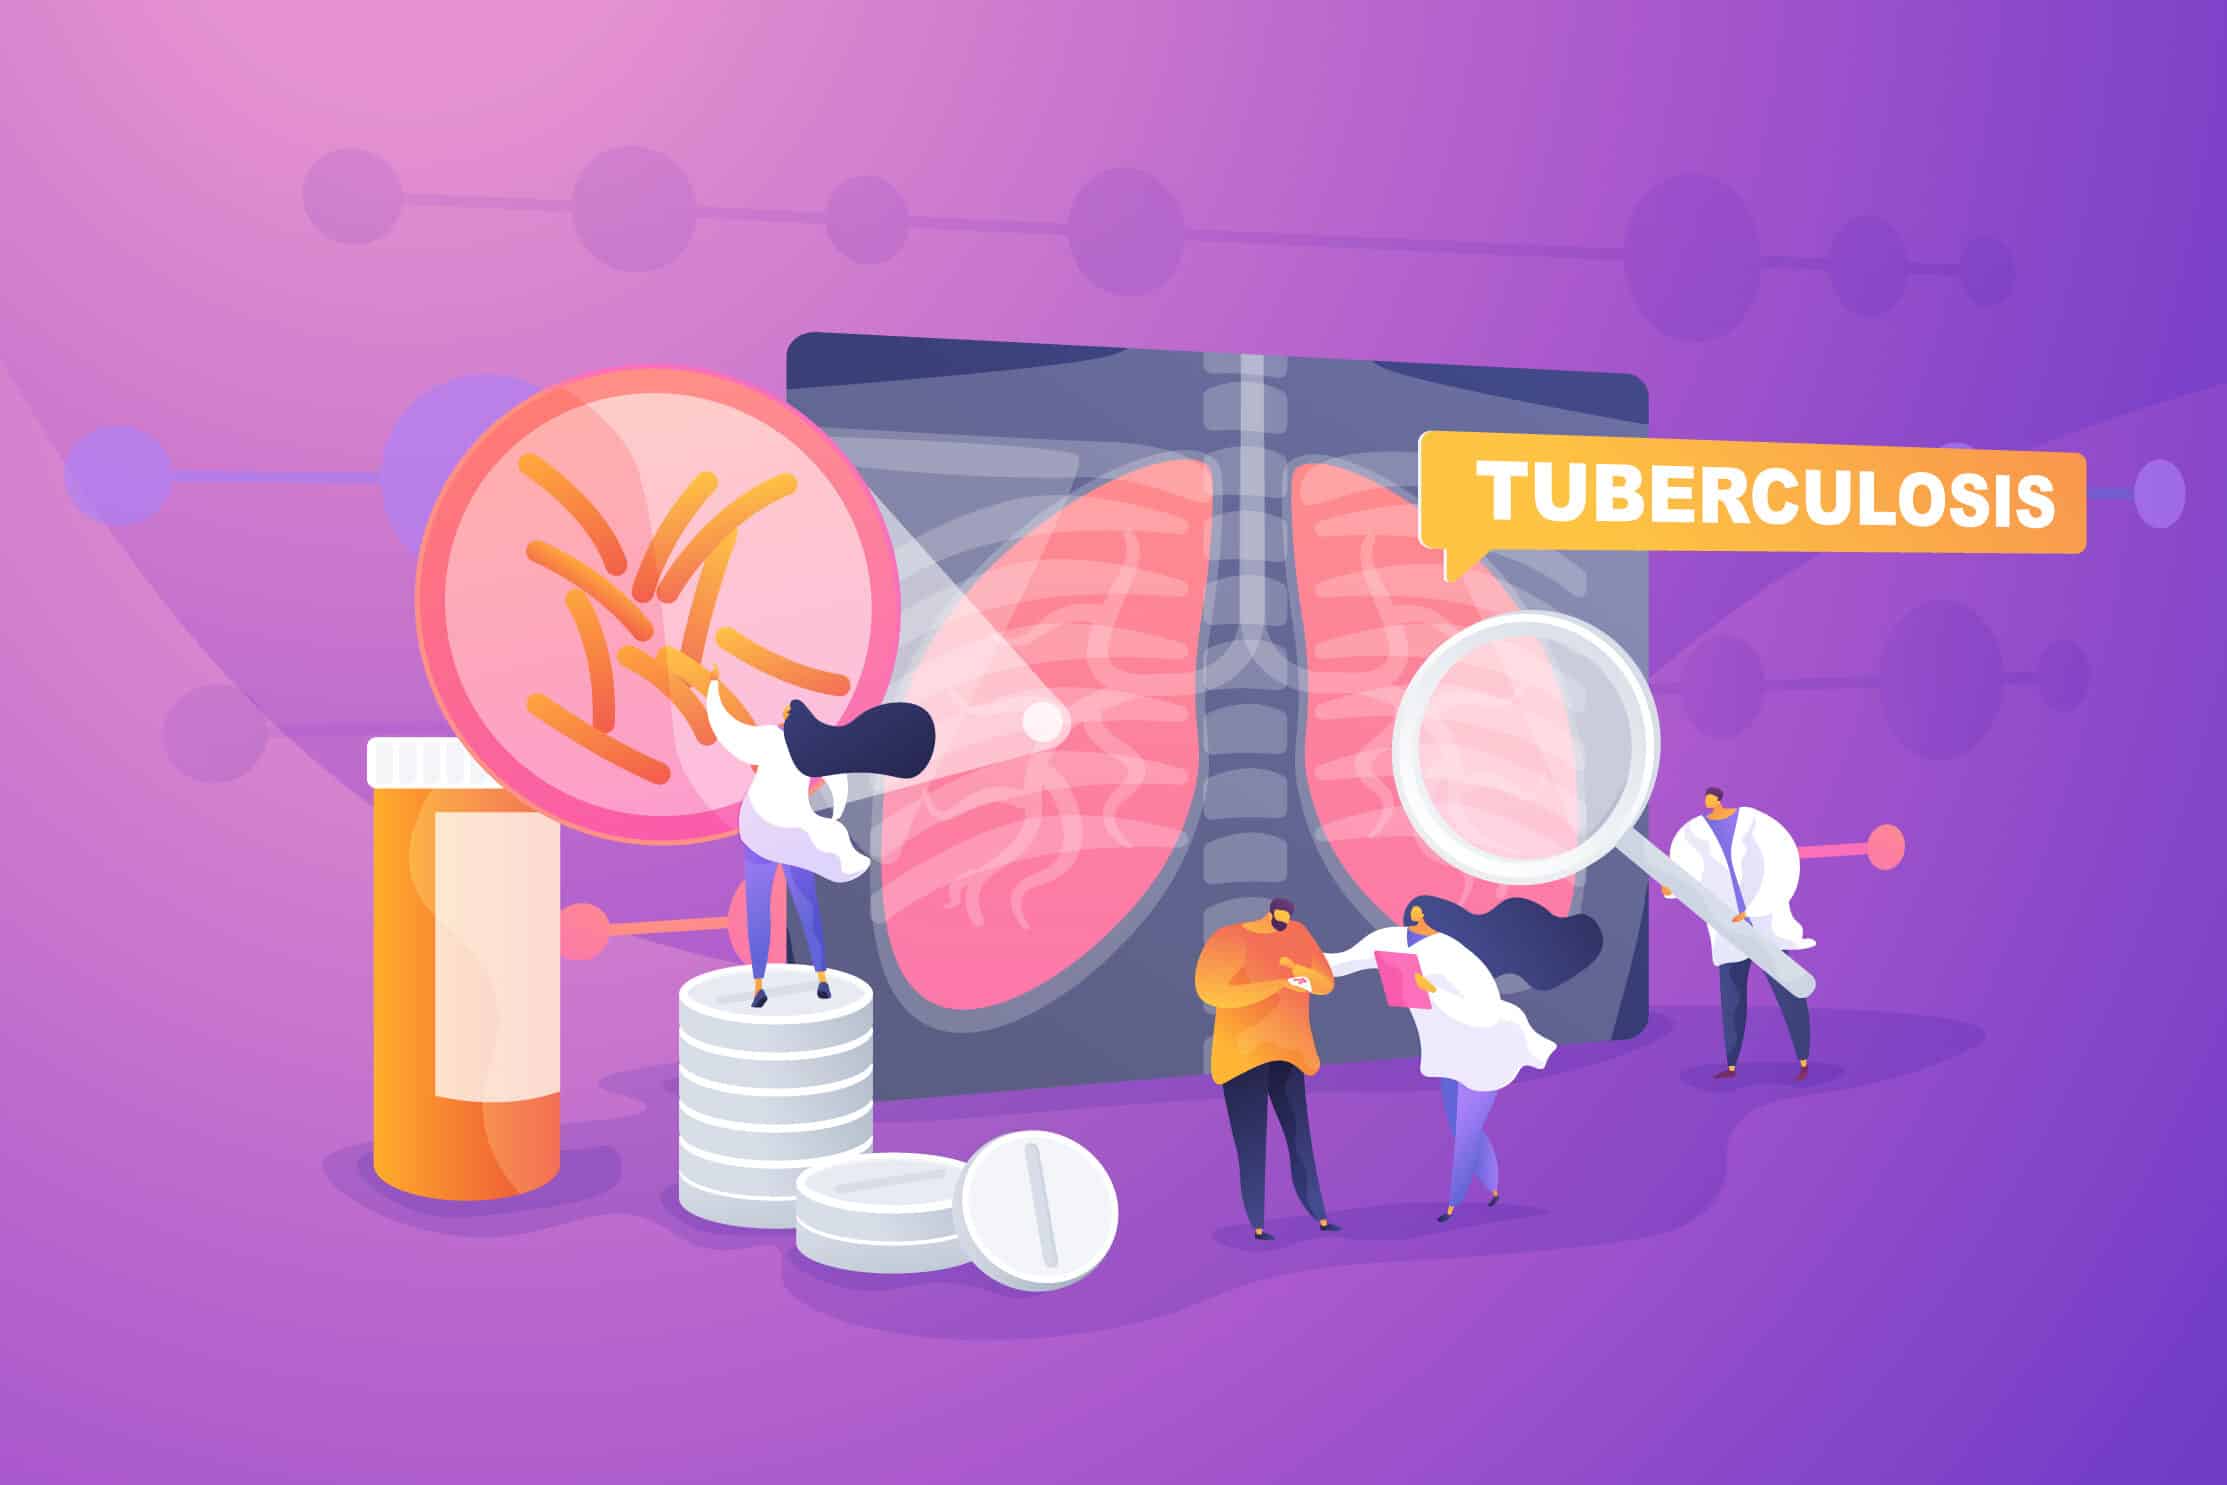 dia mundial de la tuberculosis 24 de marzo